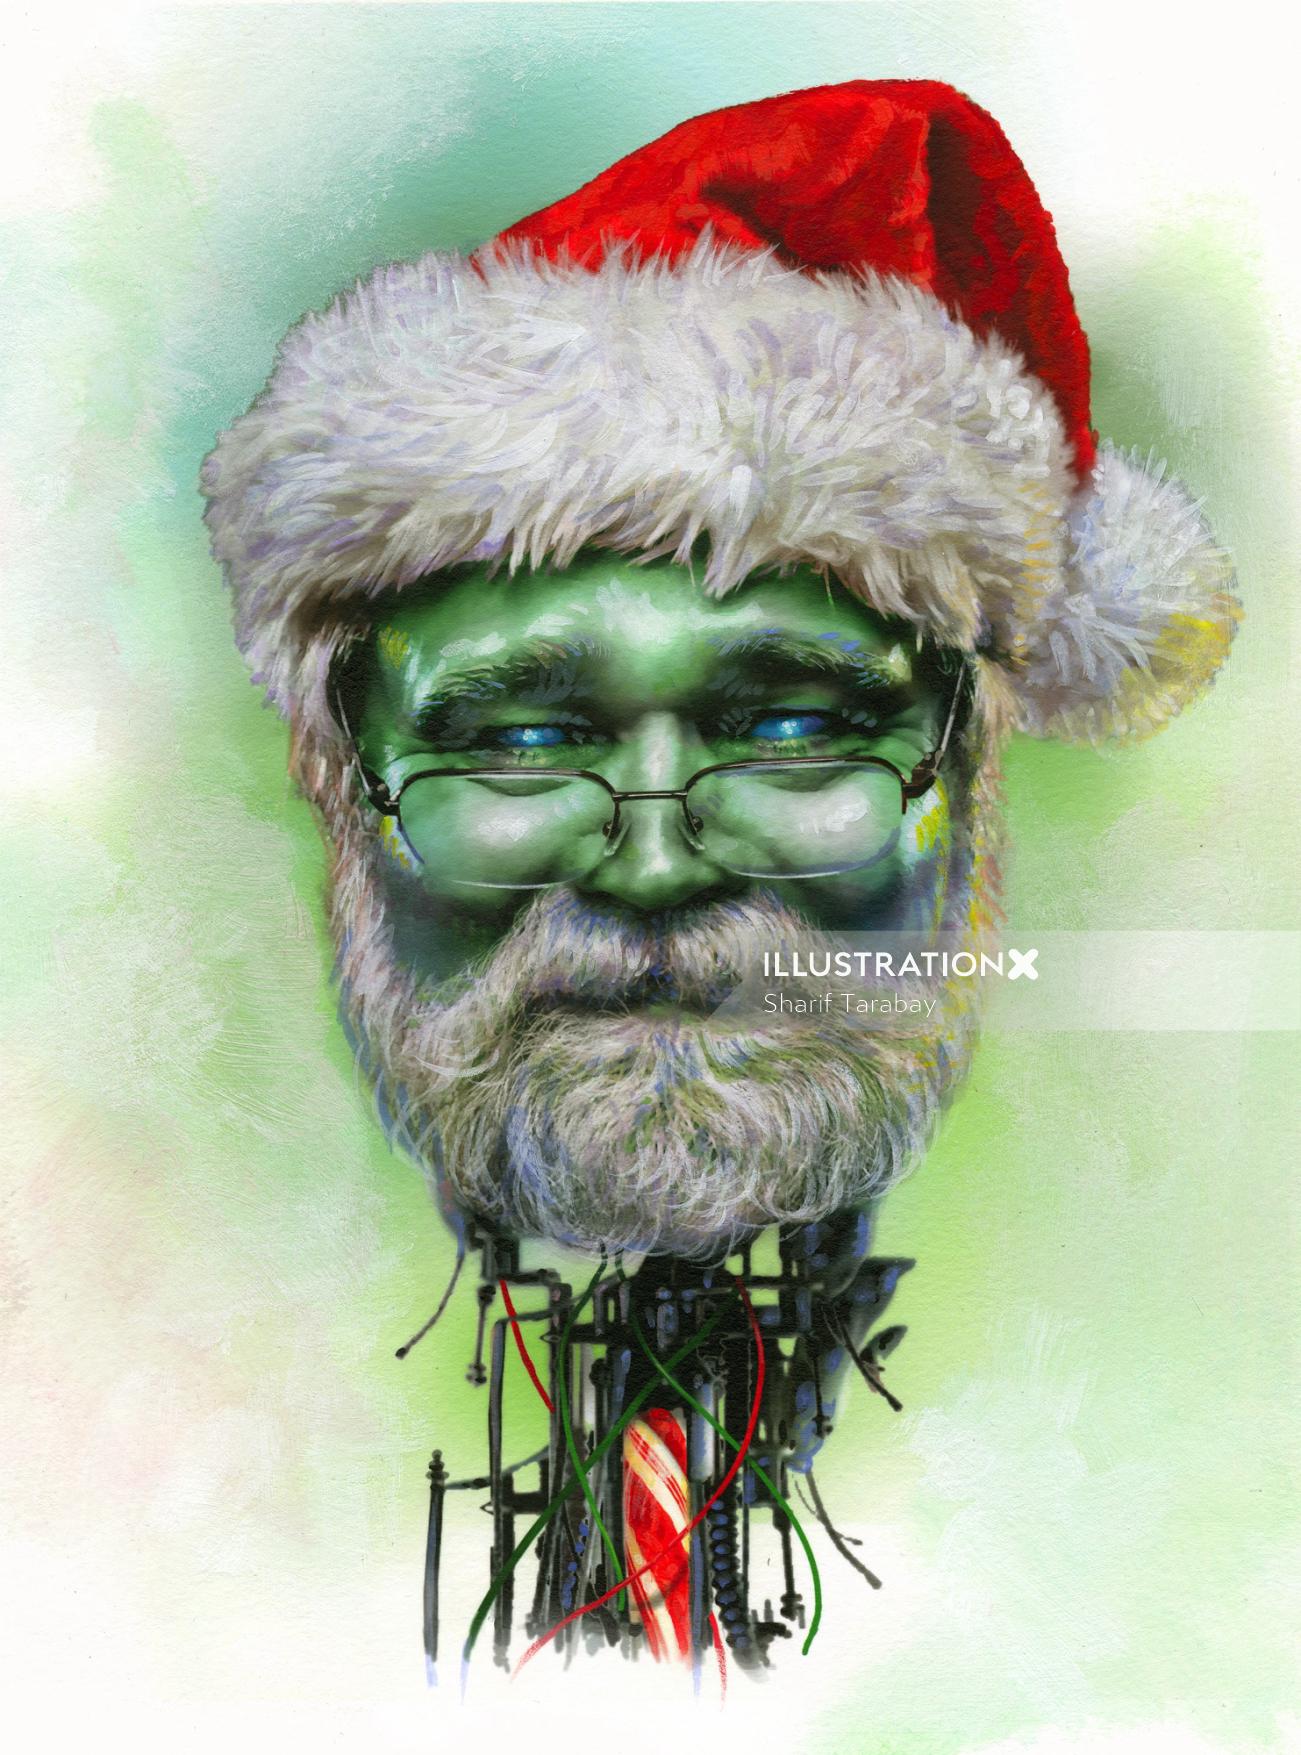 Santa Claus portrait illustration 